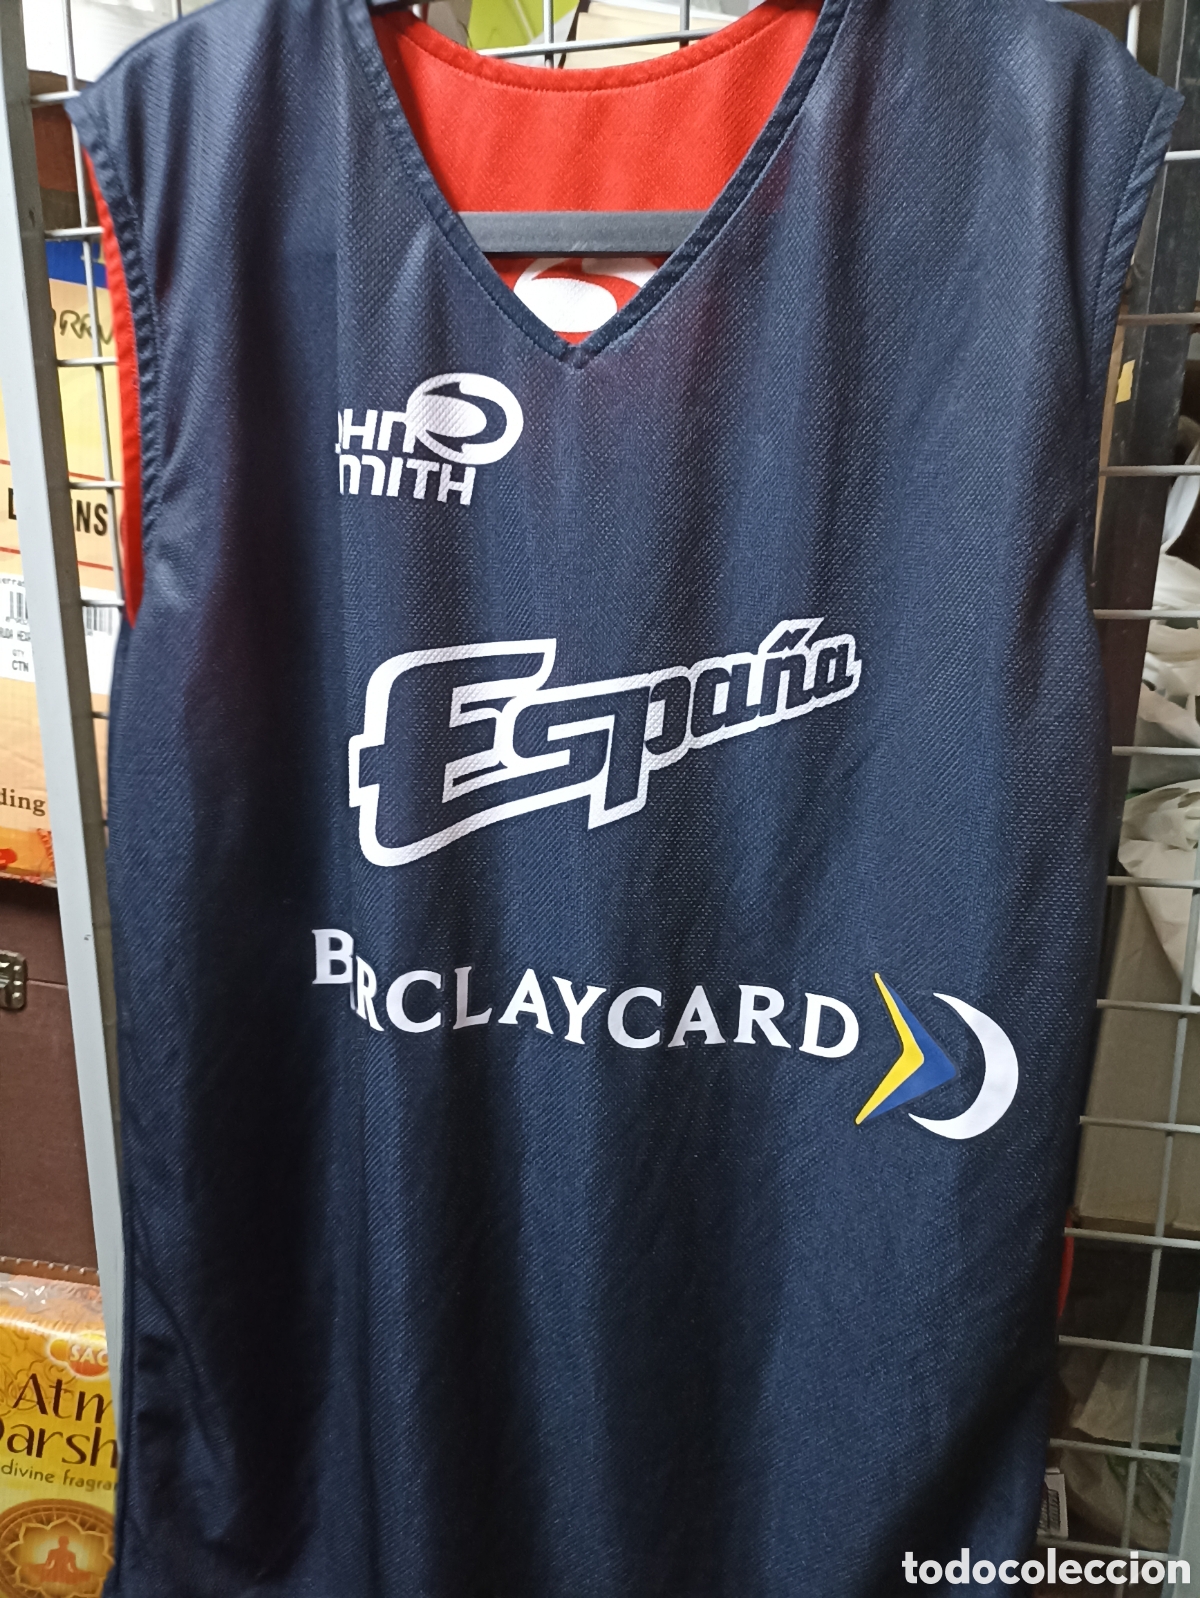 camiseta baloncesto basquet seleccion española - Compra venta en  todocoleccion